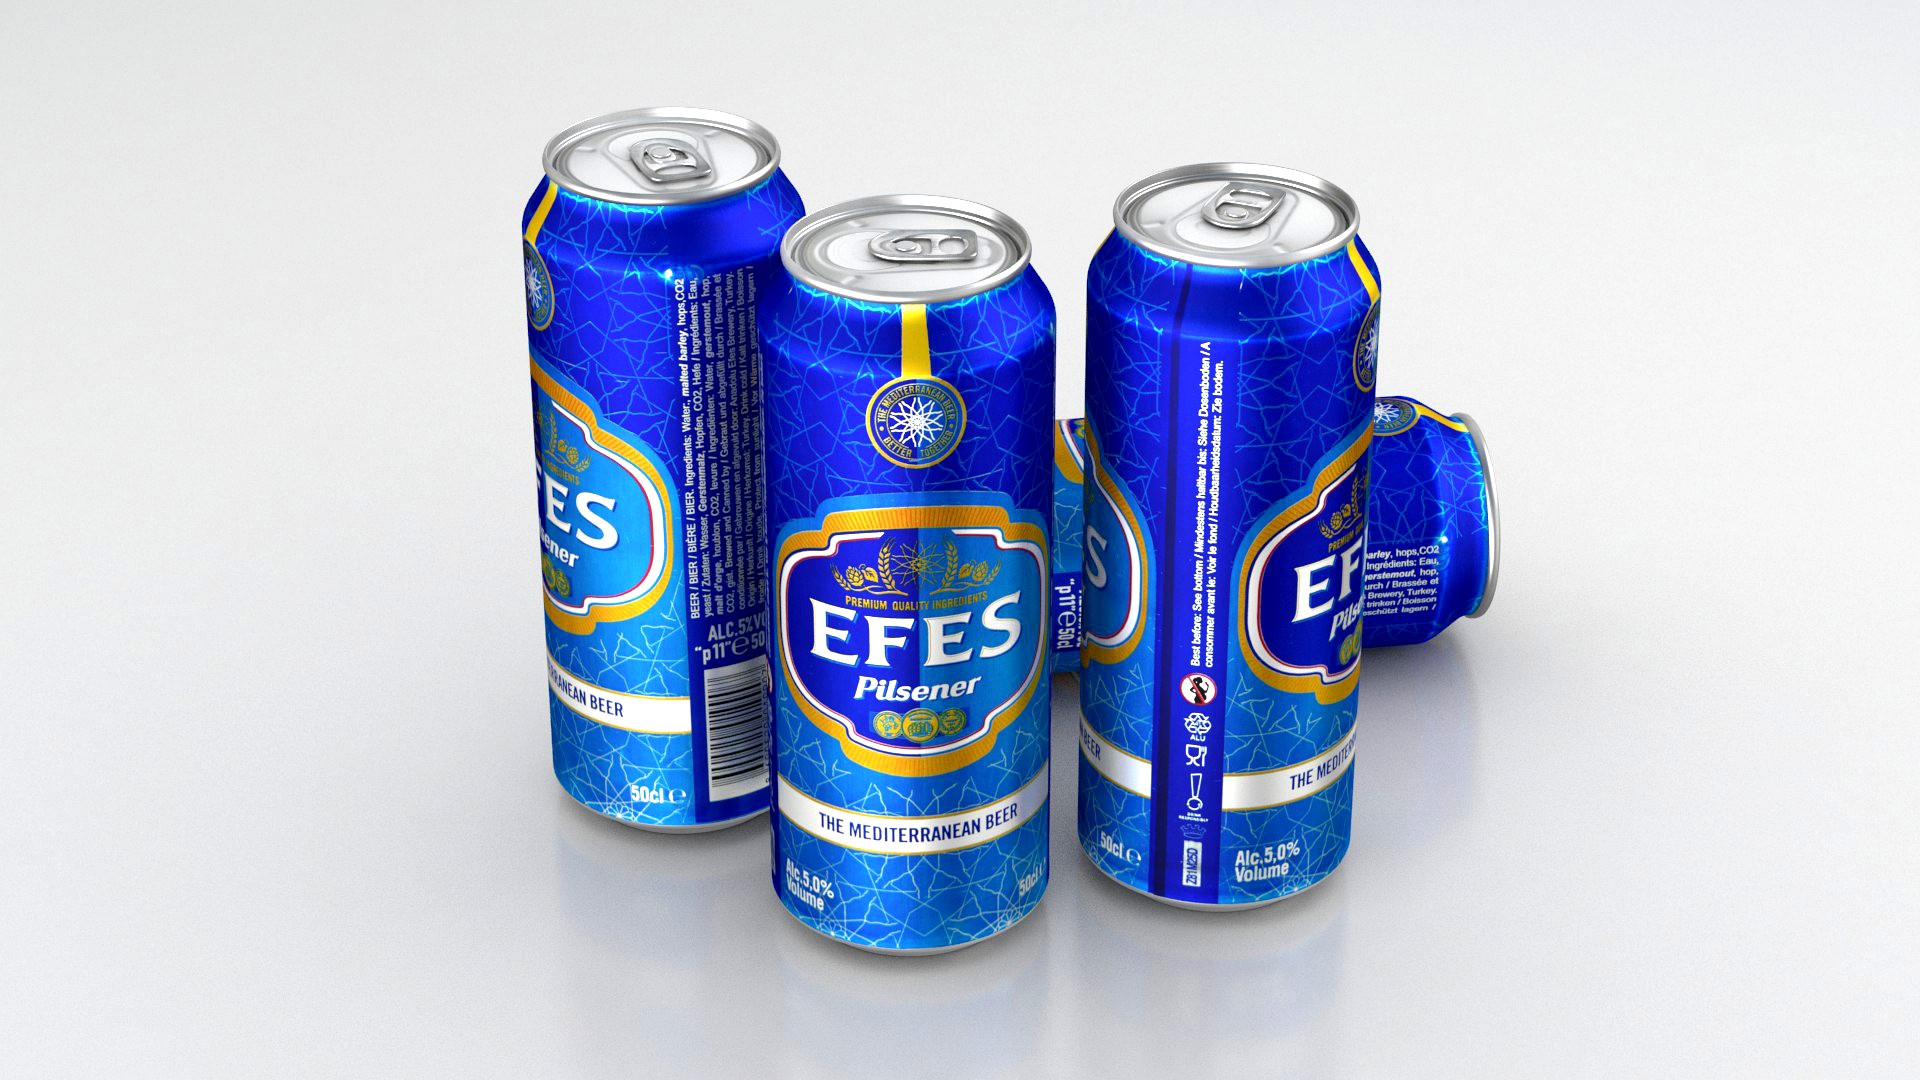 Beer Can Efes Pilsener 500ml 2019